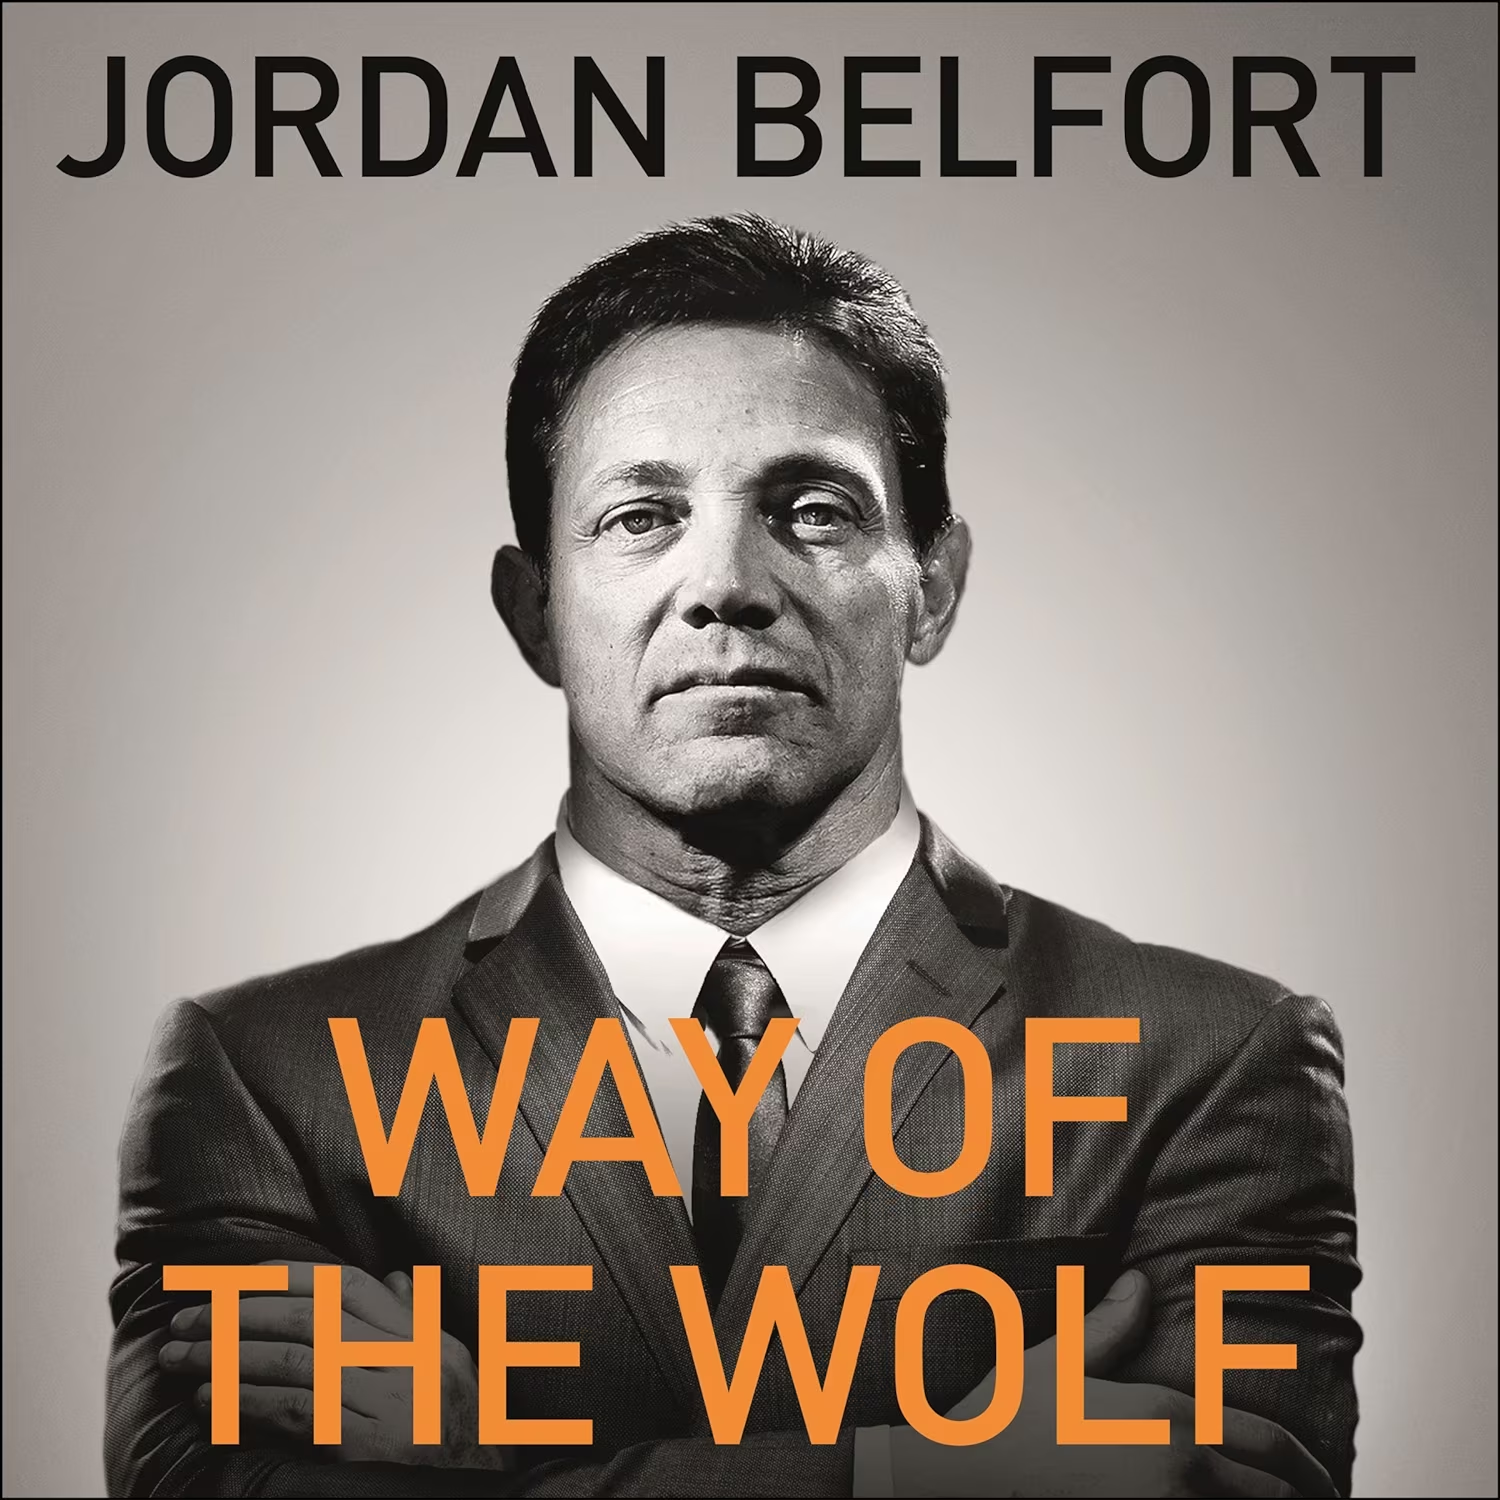 Way of the Wolf by Jordan Belfort